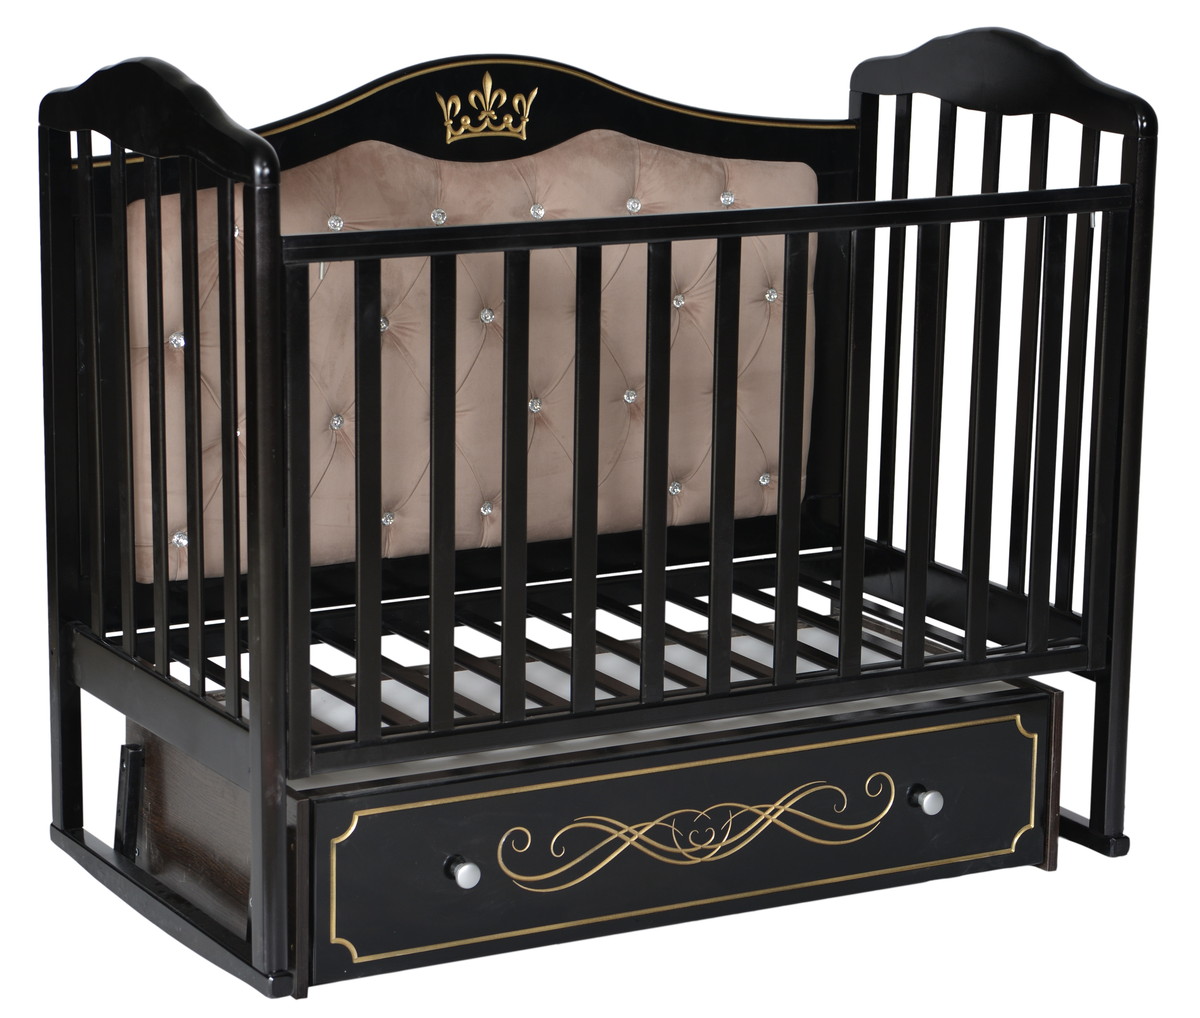 Кроватка детская Антел Алита 777 маятник универсальный, мягкая спинка шоколад